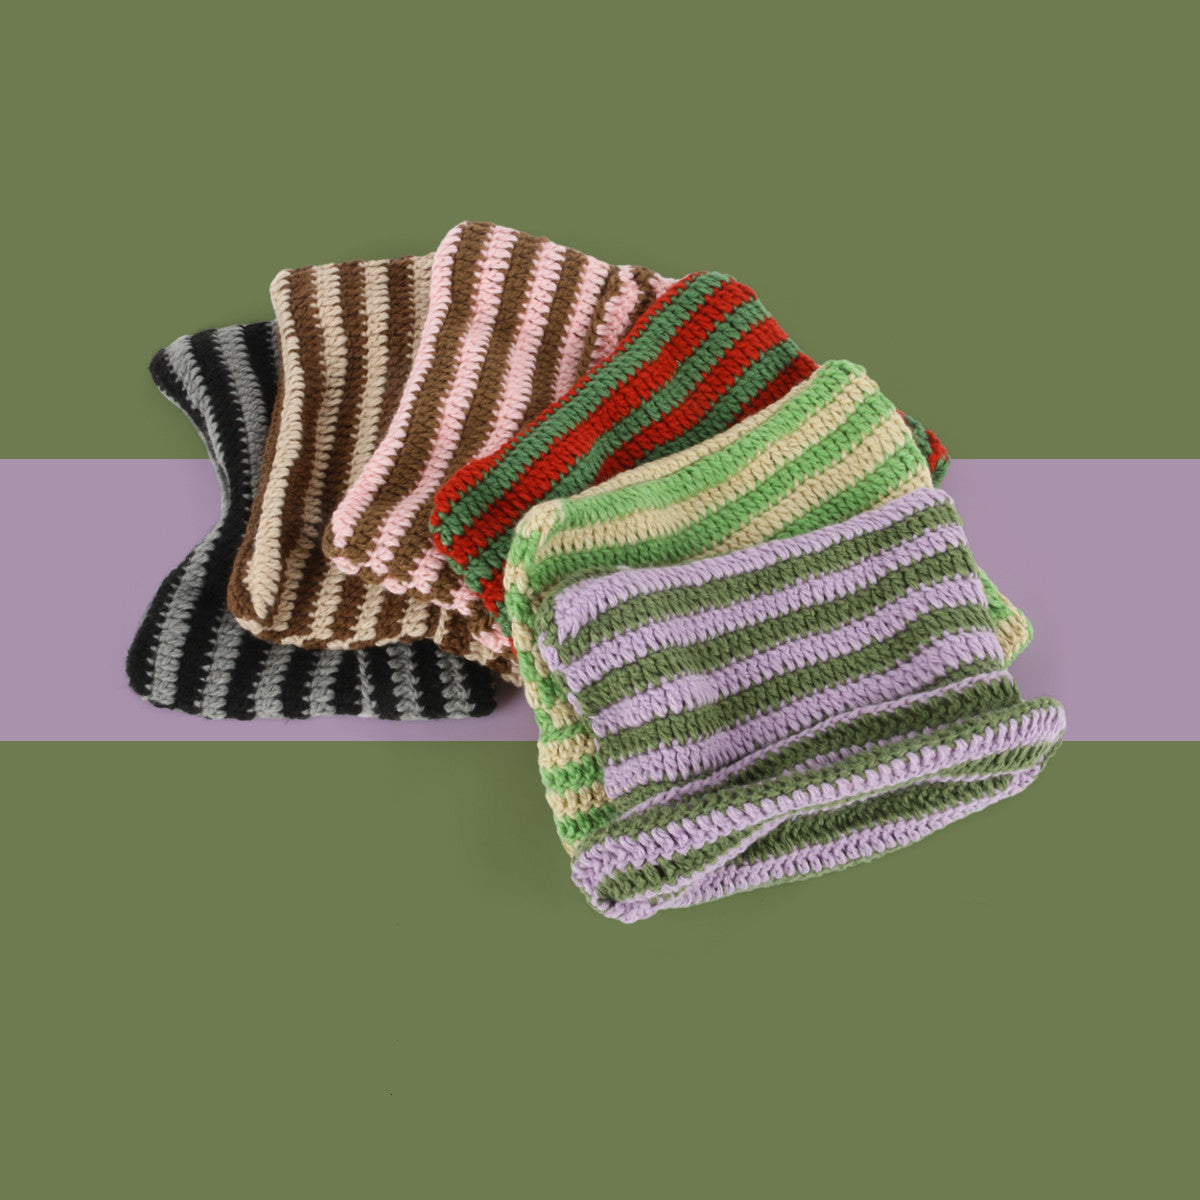 ins-little-devil-striped-knitted-wool-hat-women